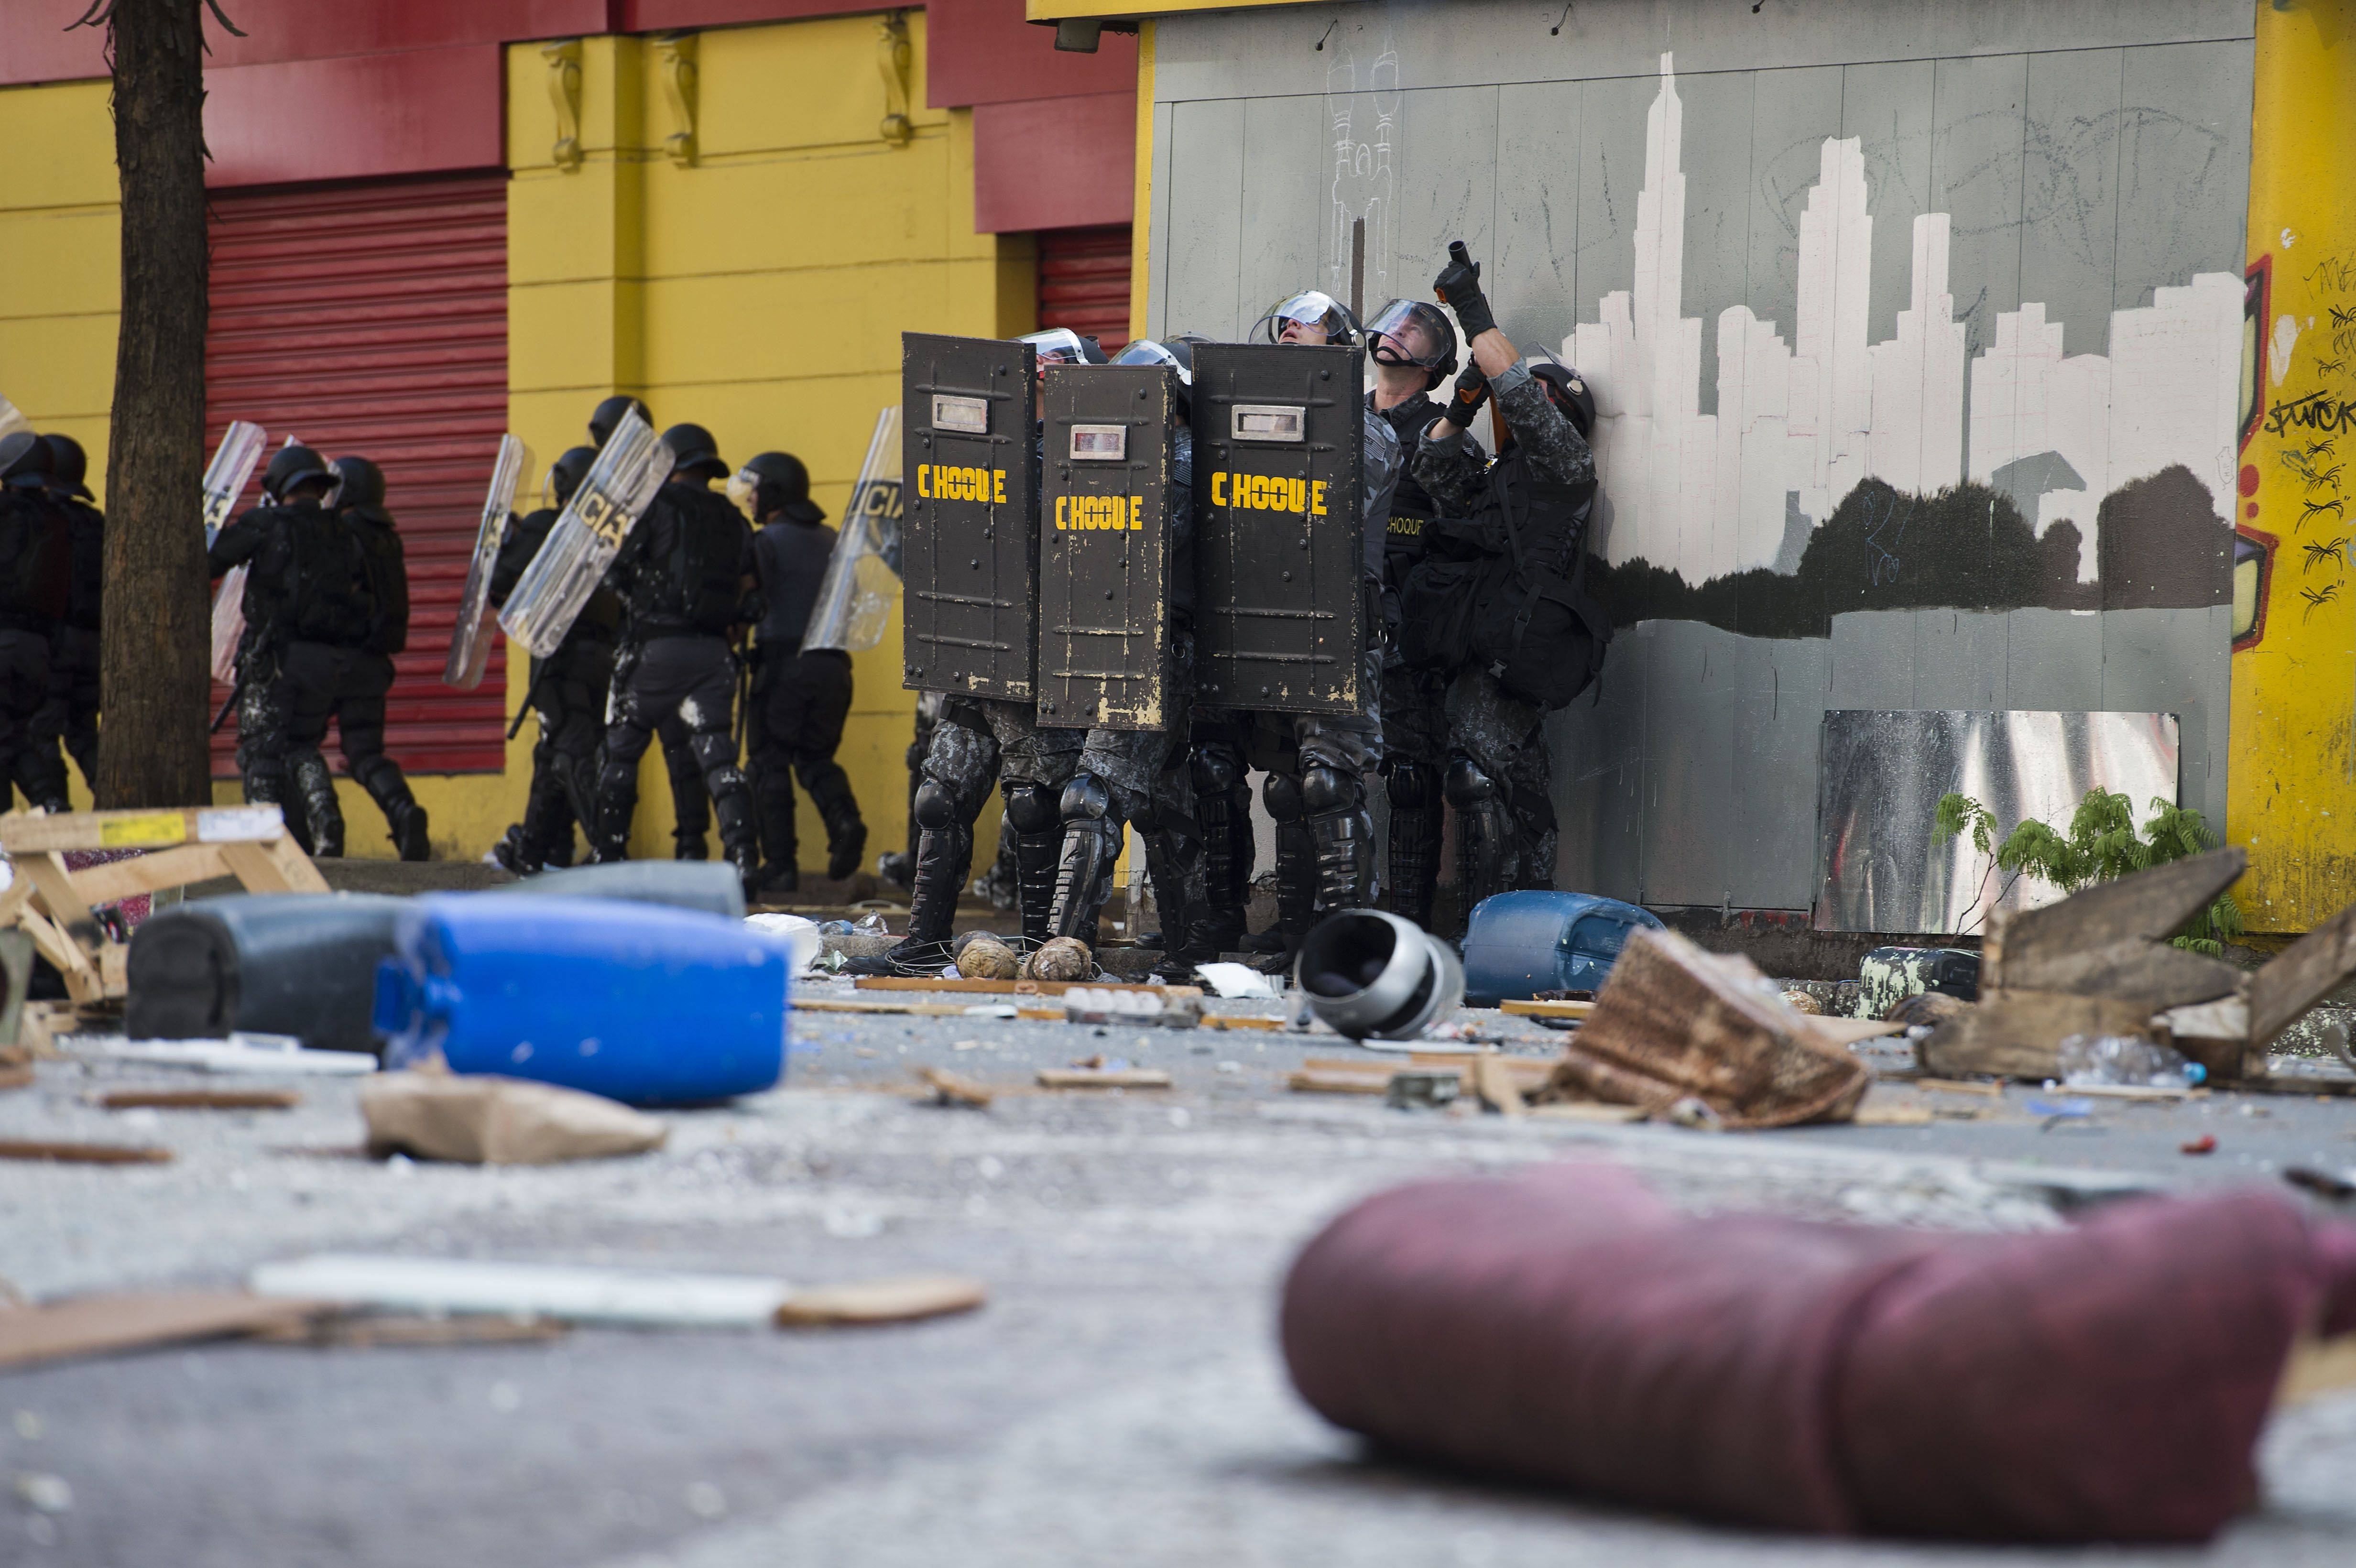 Lanzan palos y hasta sillones en violento desalojo de edificio ocupado en Sao Paulo